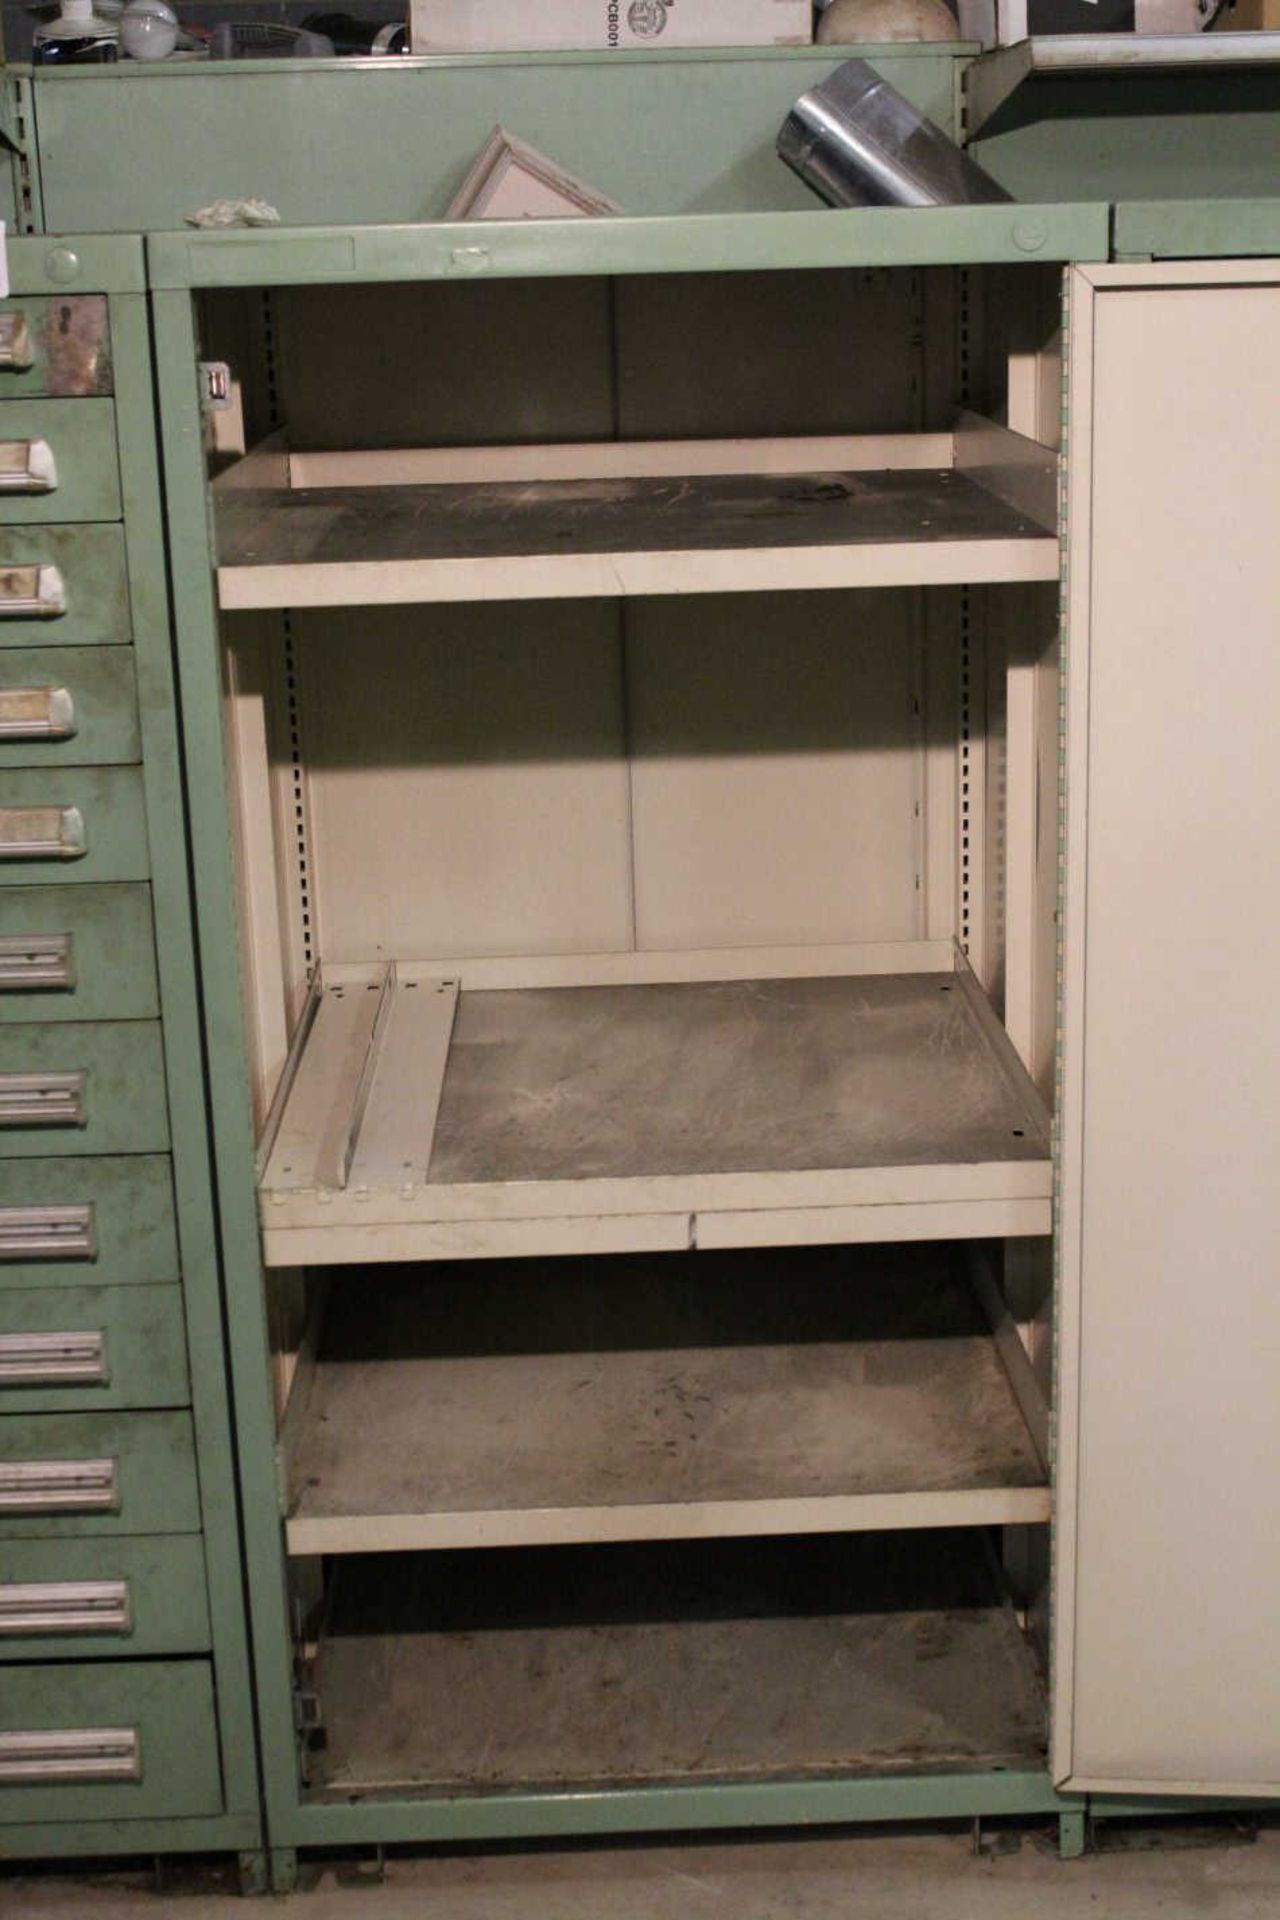 Stanley Vidmar Storage Cabinet 30"x59"x28" - Image 3 of 3